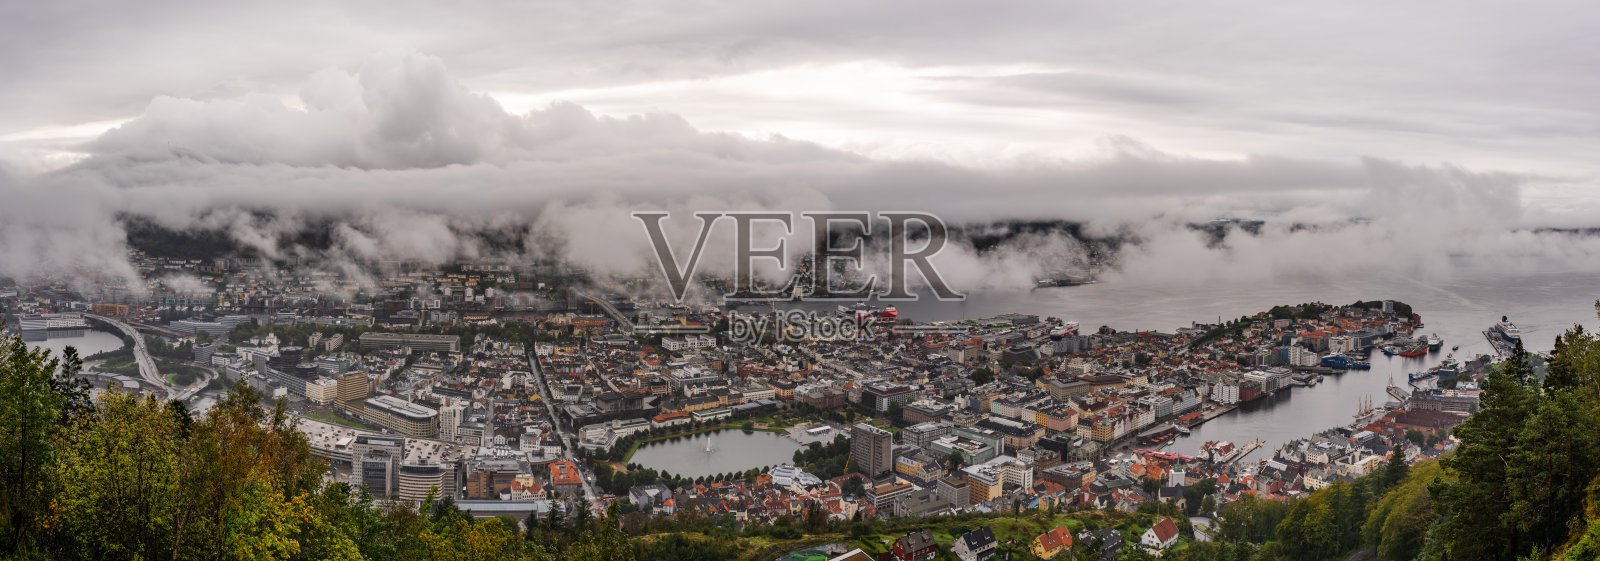 从Floyfjellet上看，阴雨绵绵，城市笼罩在云下照片摄影图片